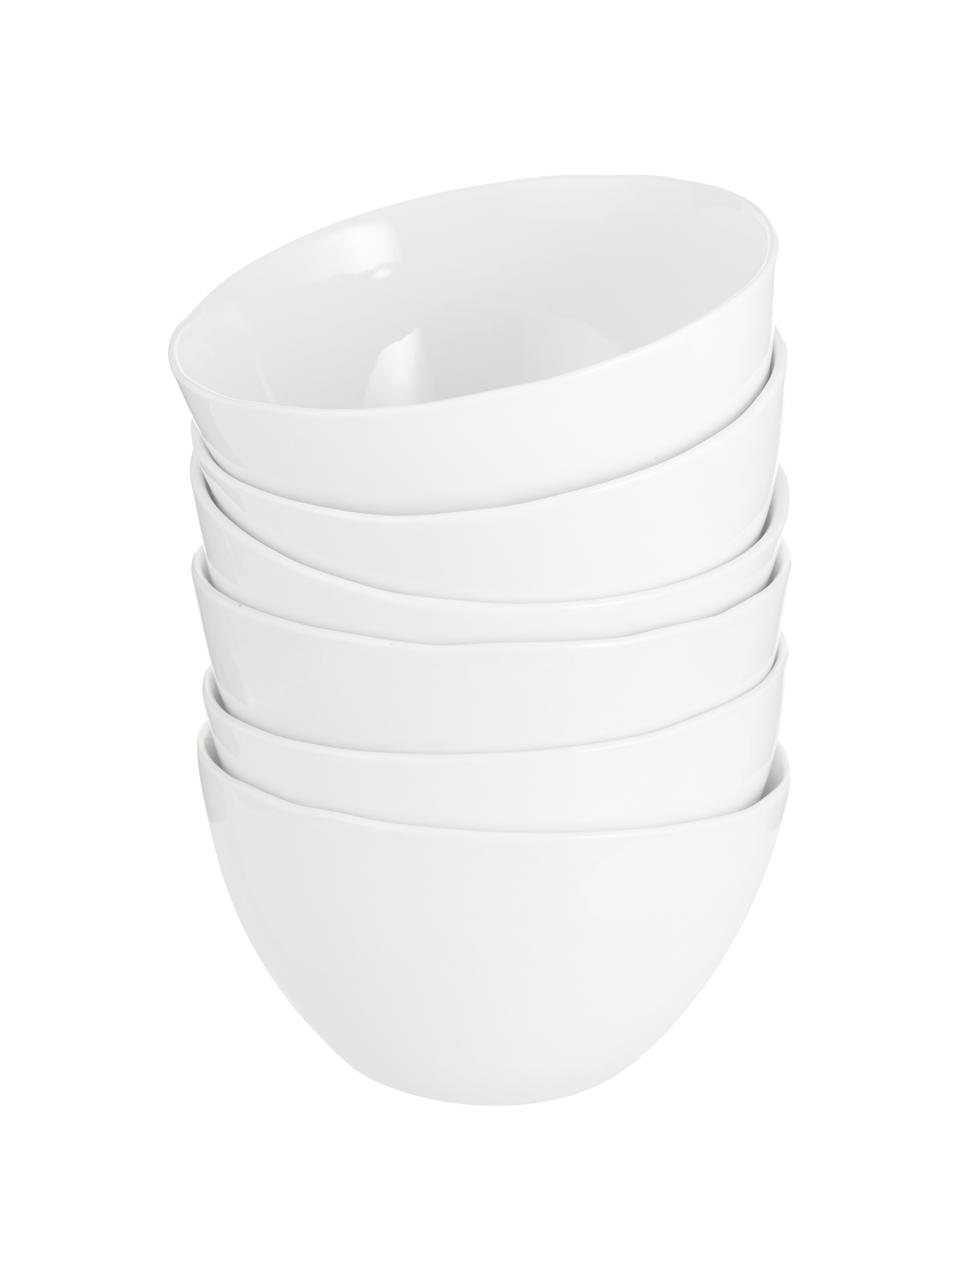 Schälchen Porcelino mit unebener Oberfläche, 6 Stück, Porzellan, gewollt ungleichmäßig, Weiß, Ø 15 x H 8 cm